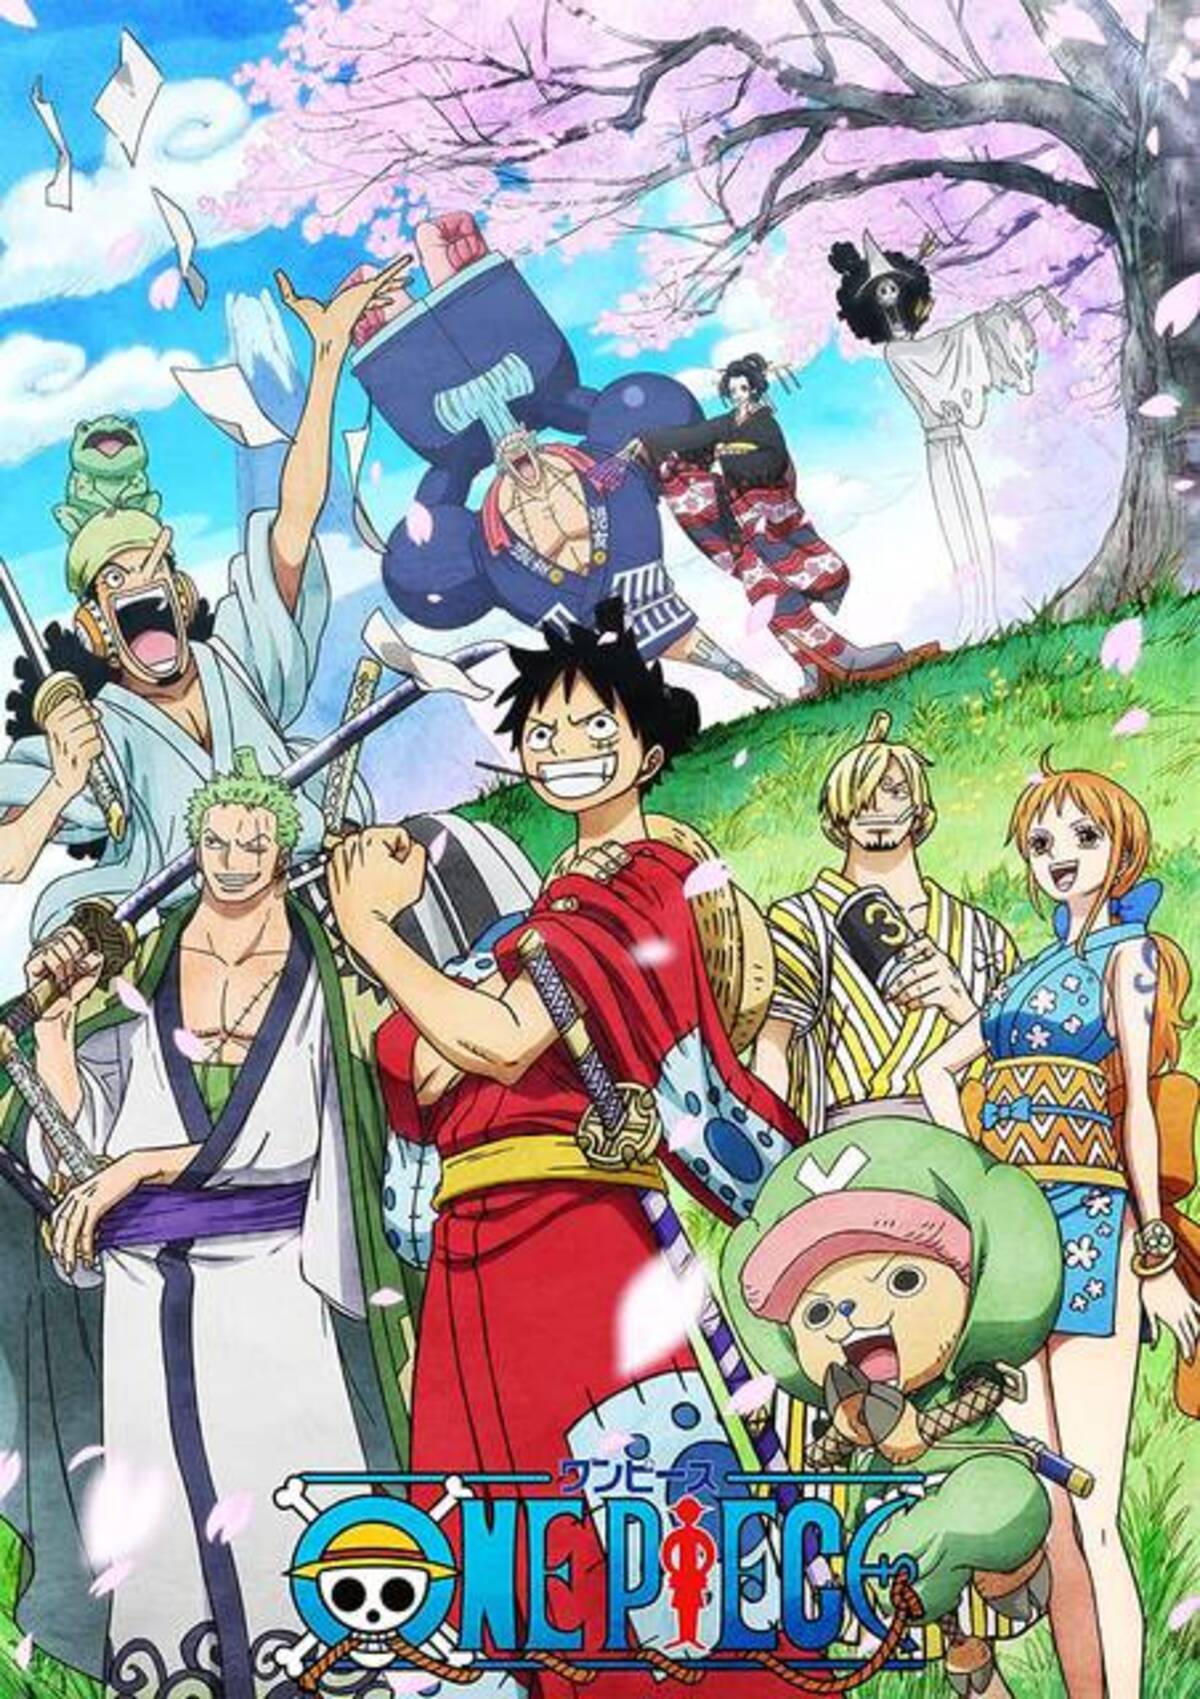 One Piece ヤマトは麦わらの一味になる 加入派と否定派 みんなの考察は 21年6月日 エキサイトニュース